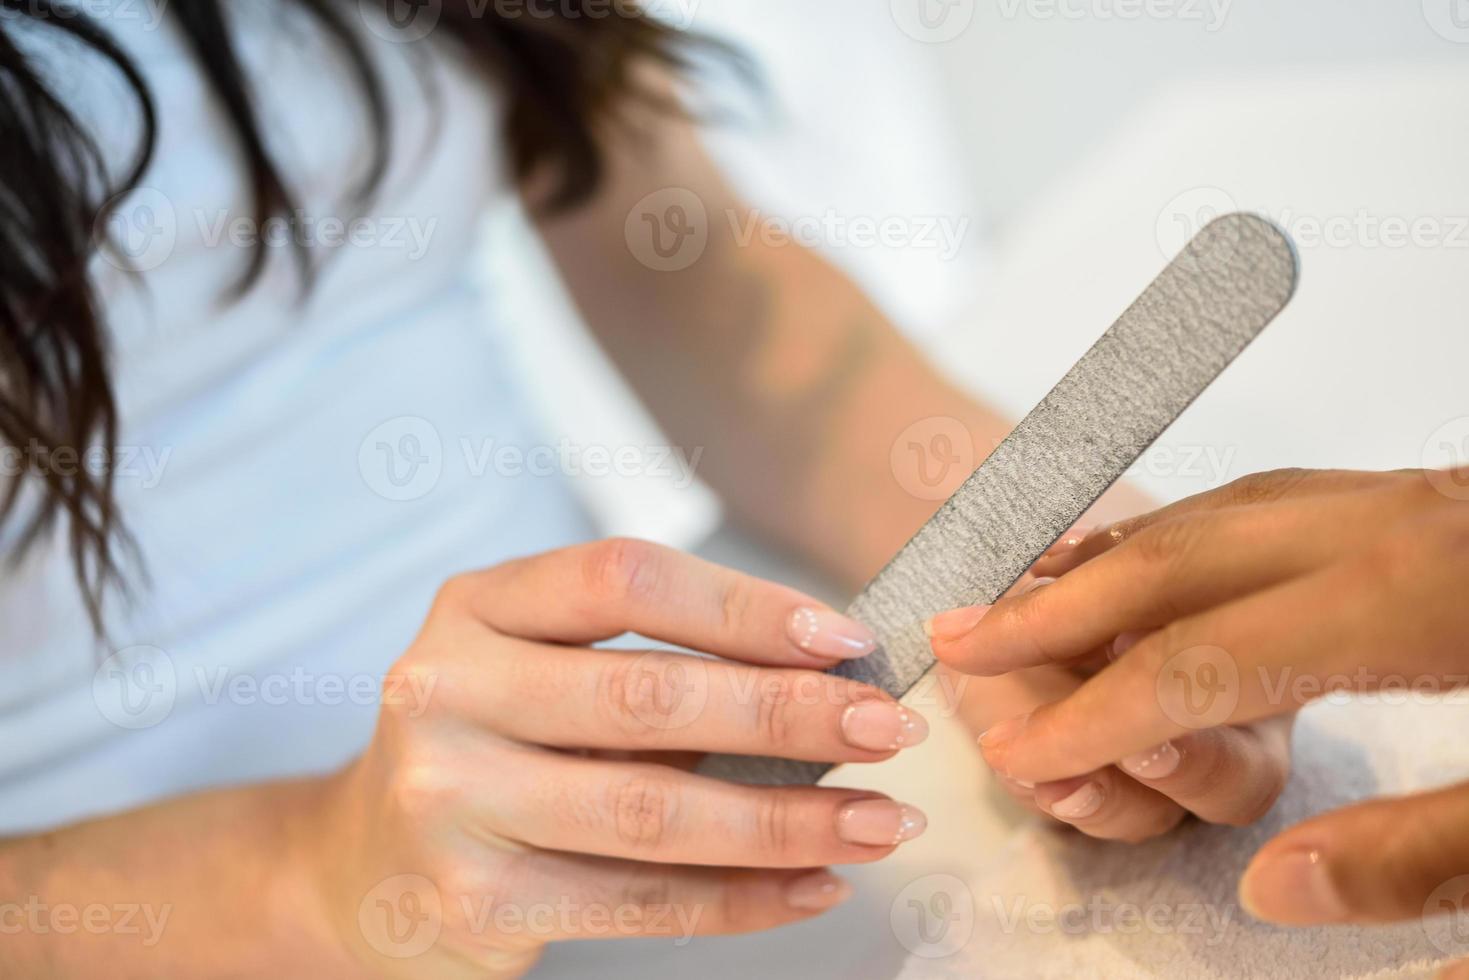 femme dans un salon de manucure recevant une manucure avec lime à ongles photo